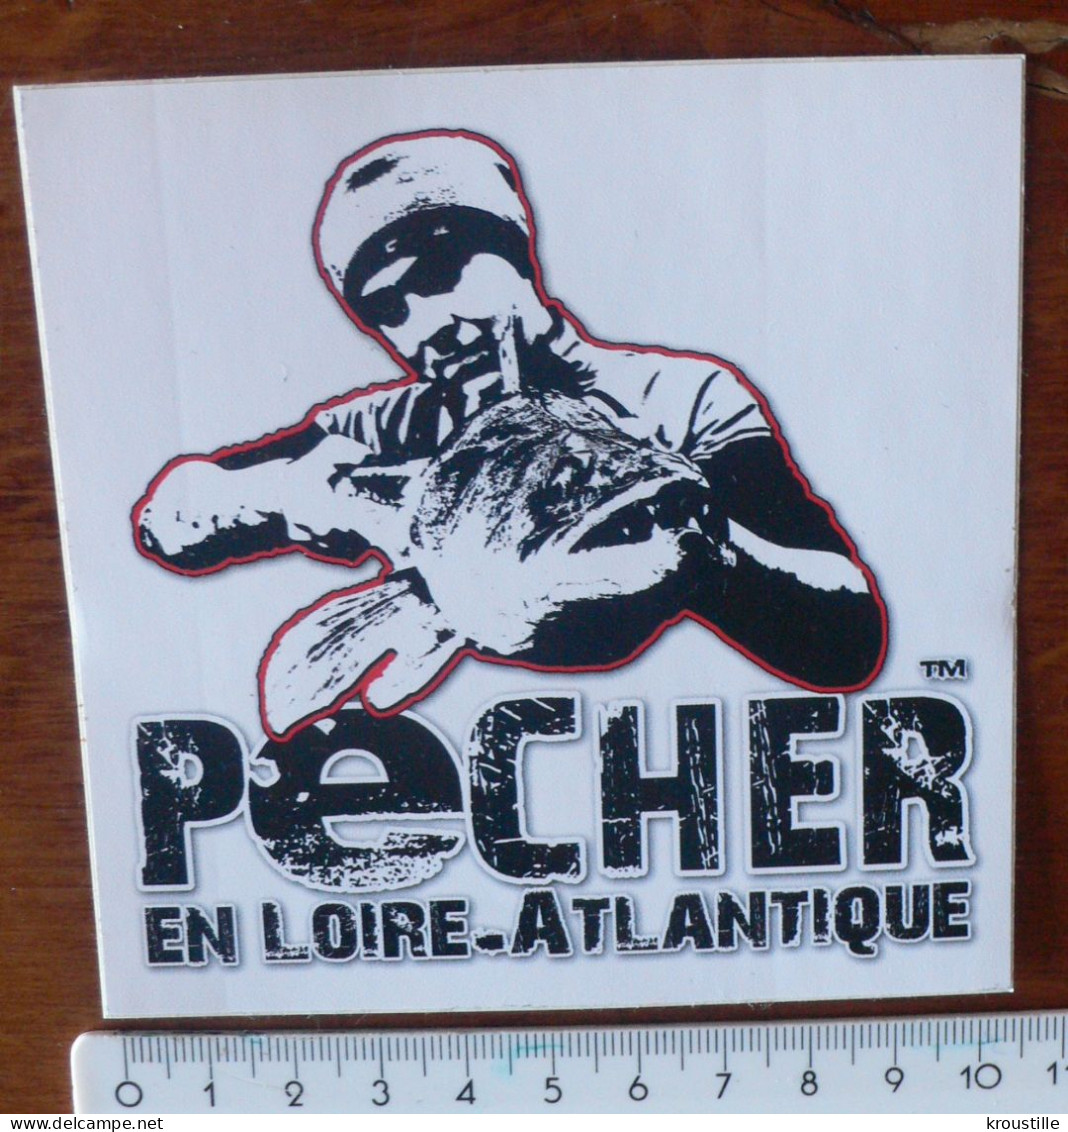 AUTCOLLANT PECHER EN LOIRE-ATLANTIQUE - Stickers